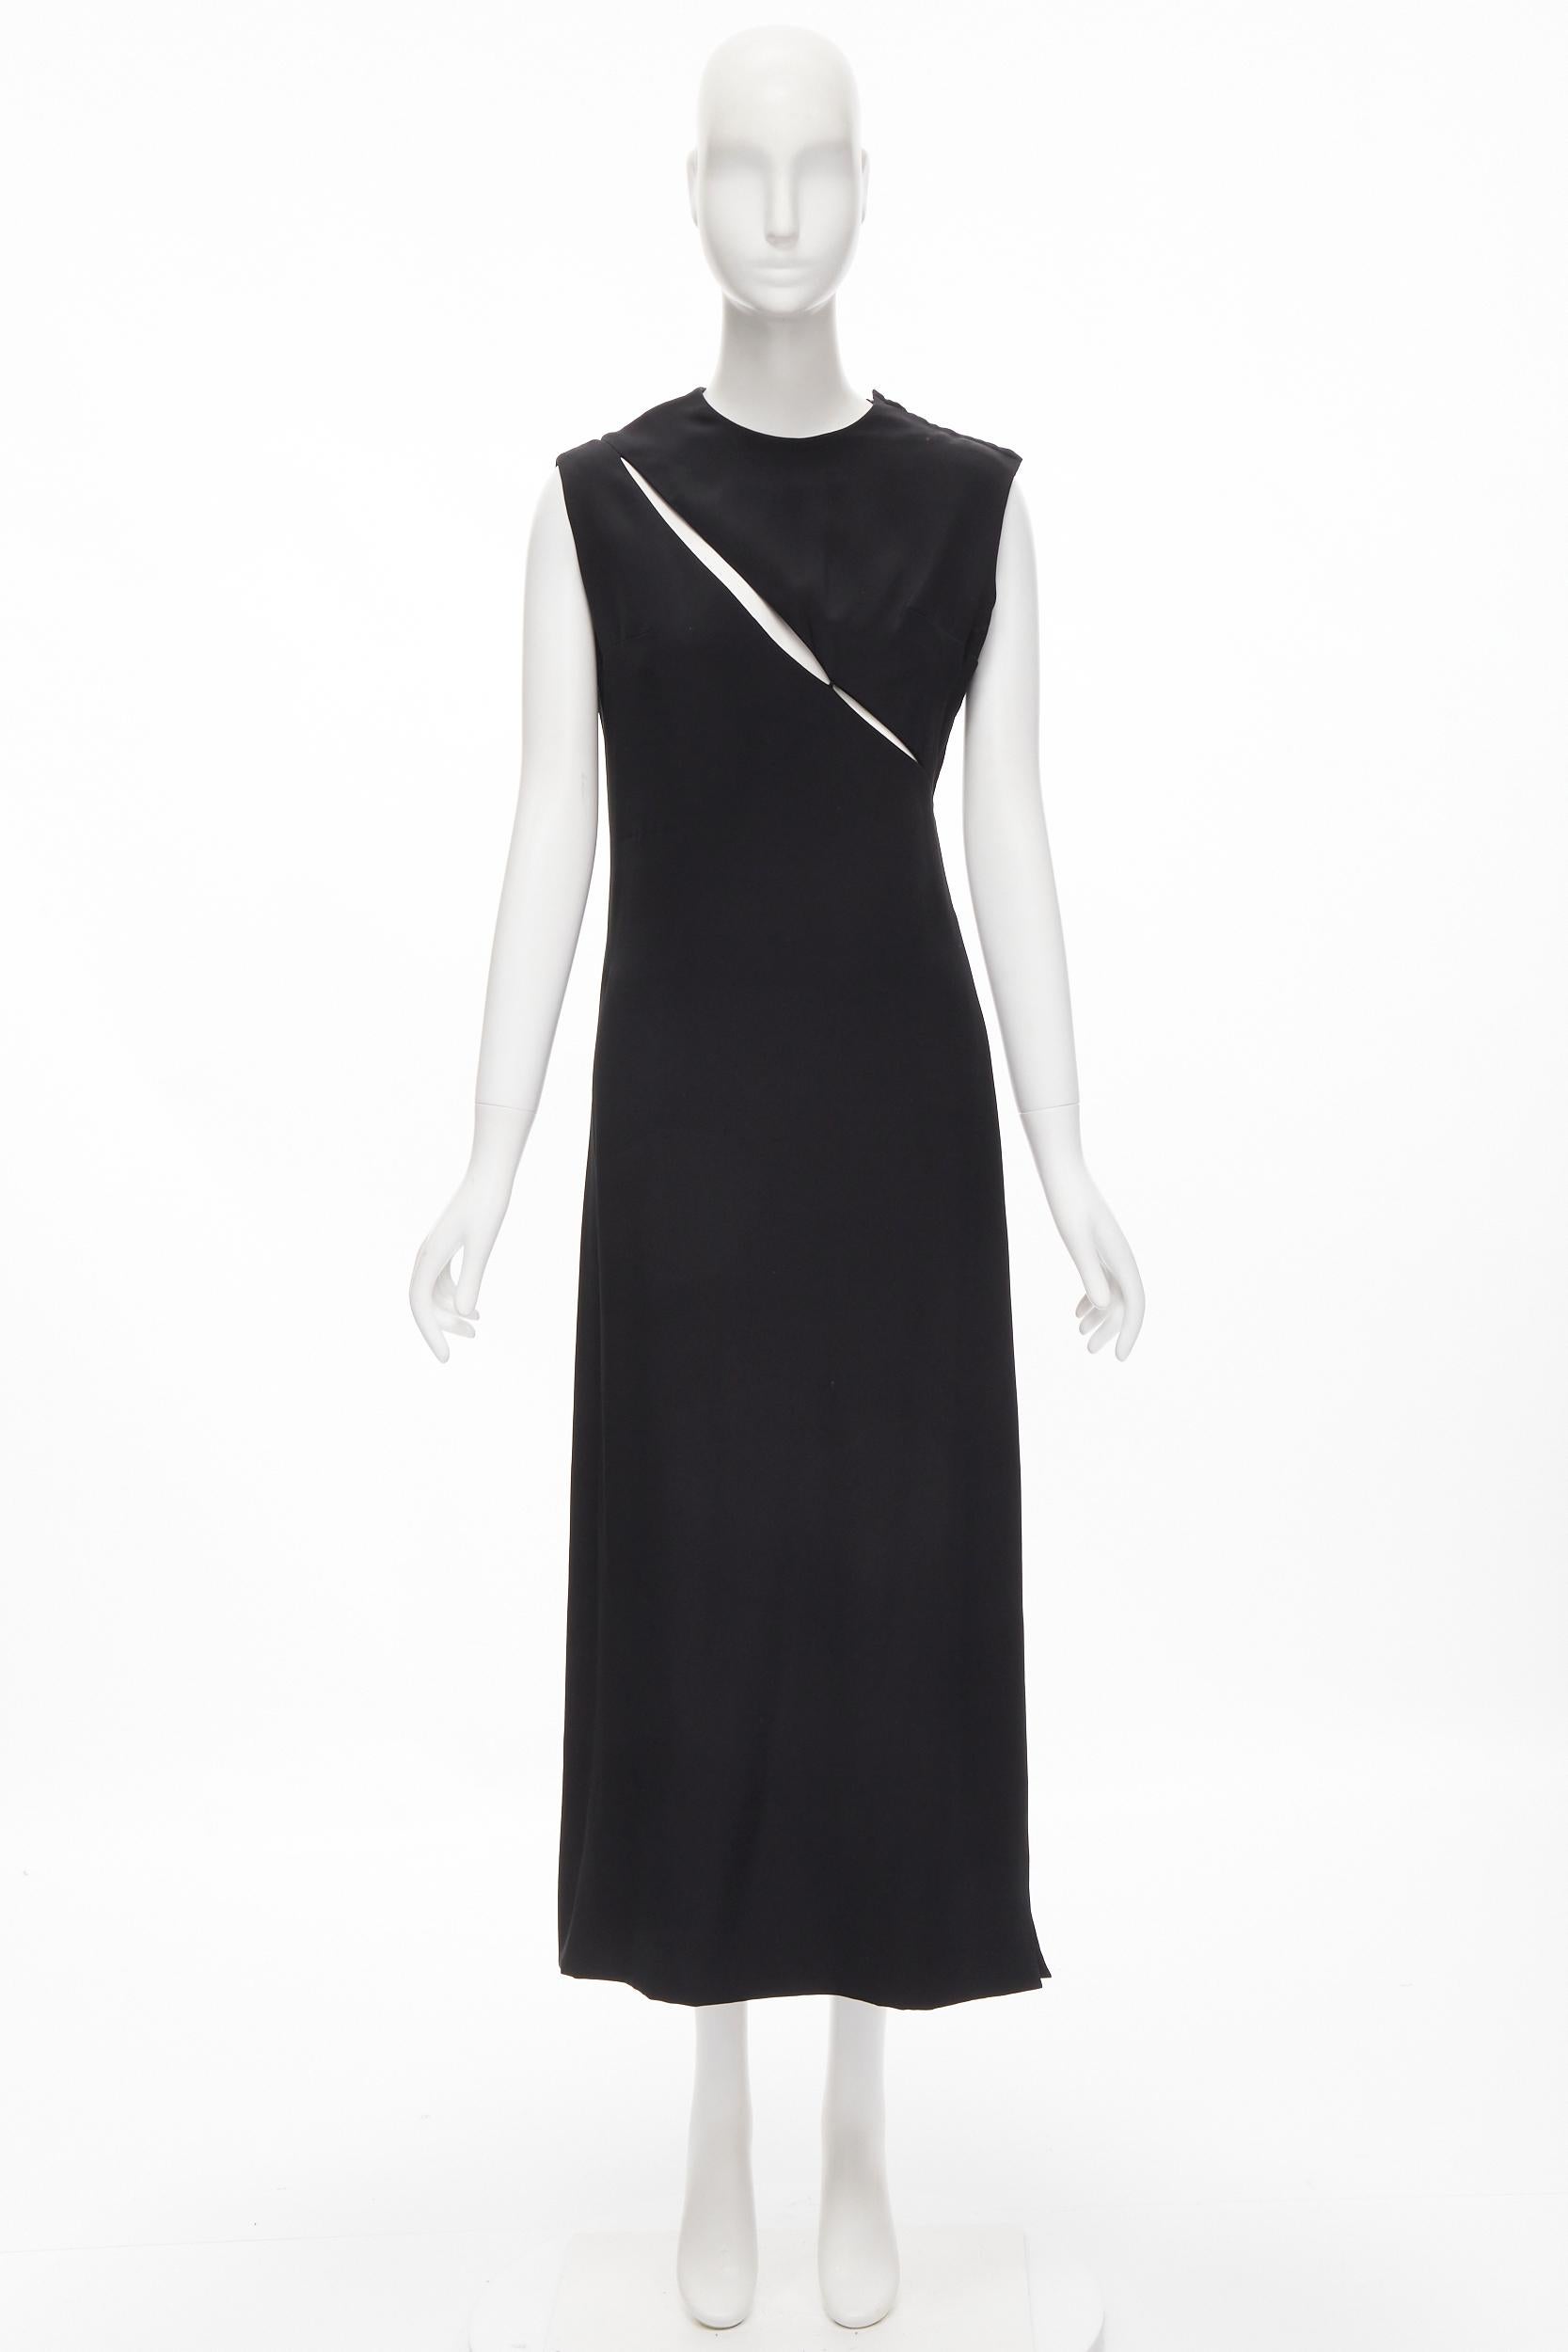 MADAME GRES Haute Couture Paris 1972 black crepe slash slit cut out dress M For Sale 6